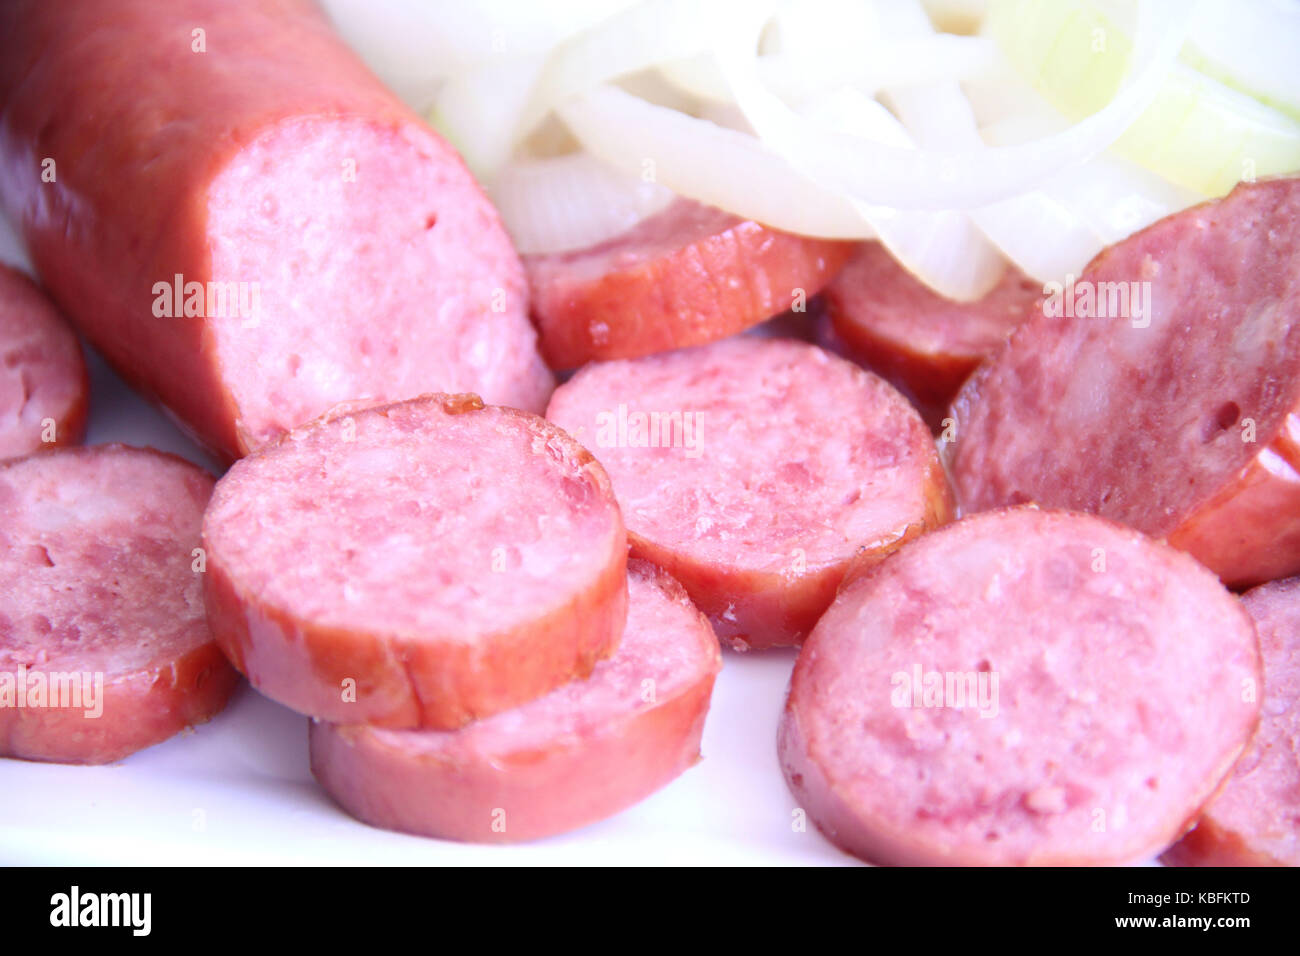 Sausage, pepperoni, onions, São Paulo, Brazil. Stock Photo